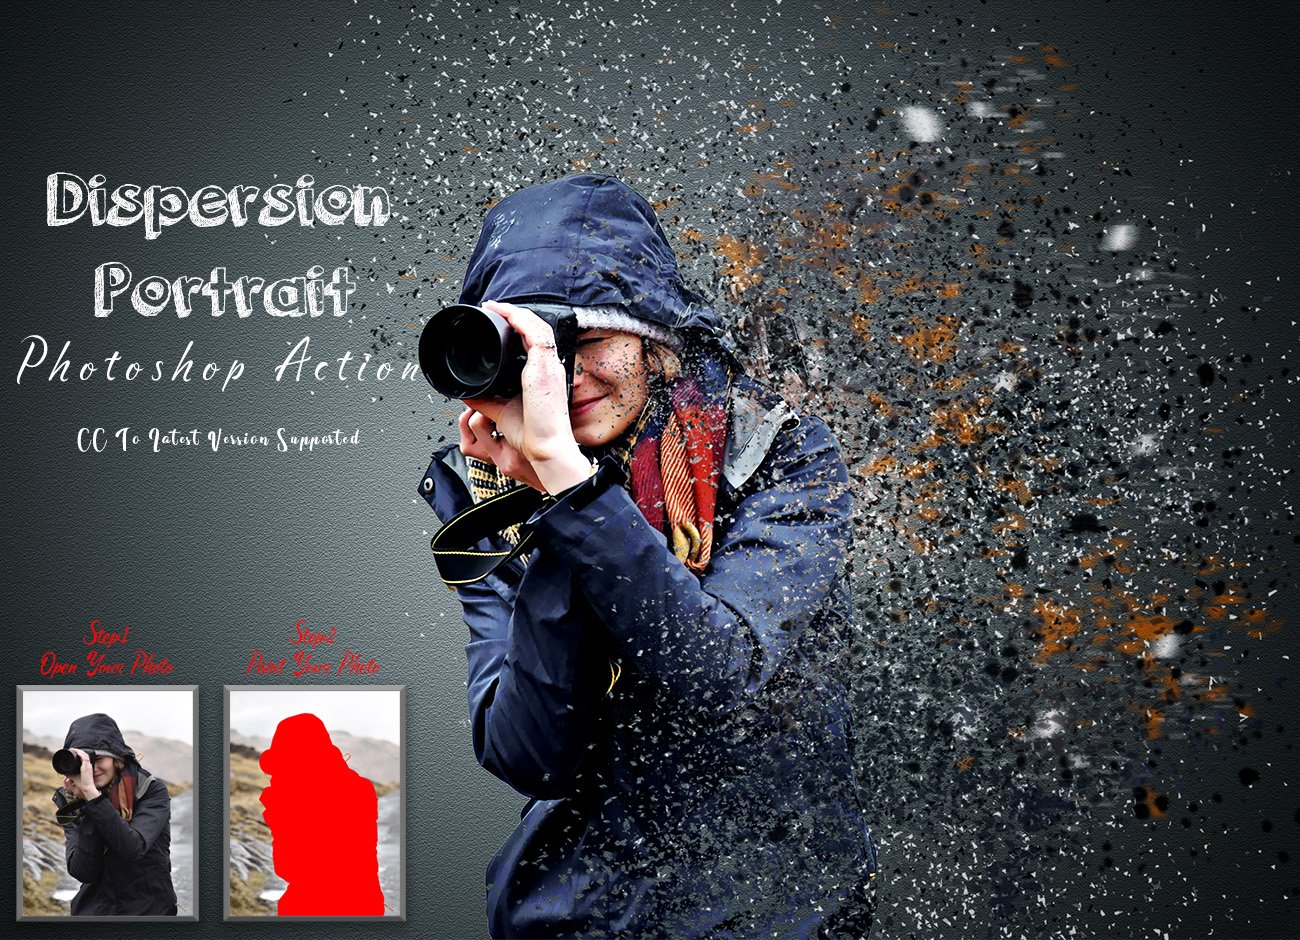 Dispersion Portrait Photoshop Actioncover image.